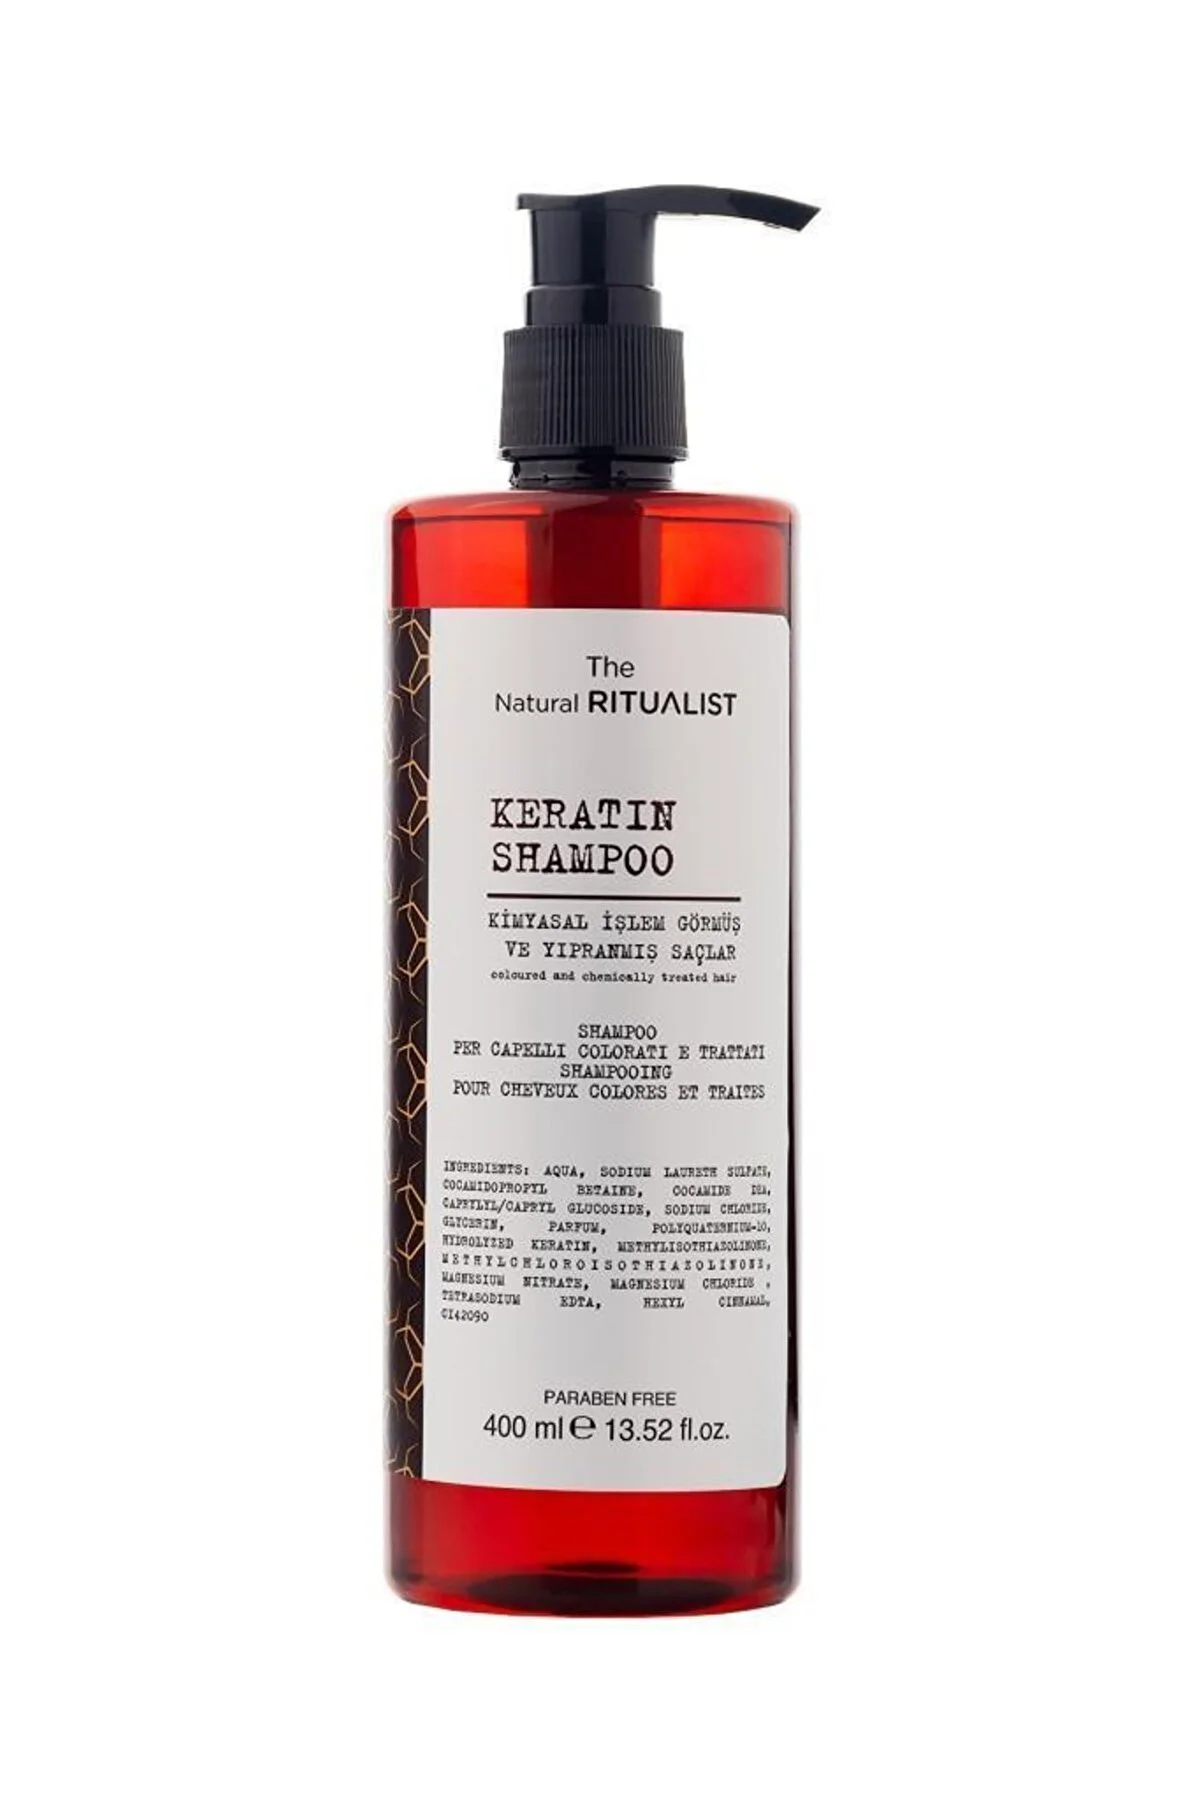 The Natural Ritualist - The Natural Ritualist Kimyasal İşlem Görmüş Ve Yıpranmış Saçlara Özel Keratin Şampuan 400 ml